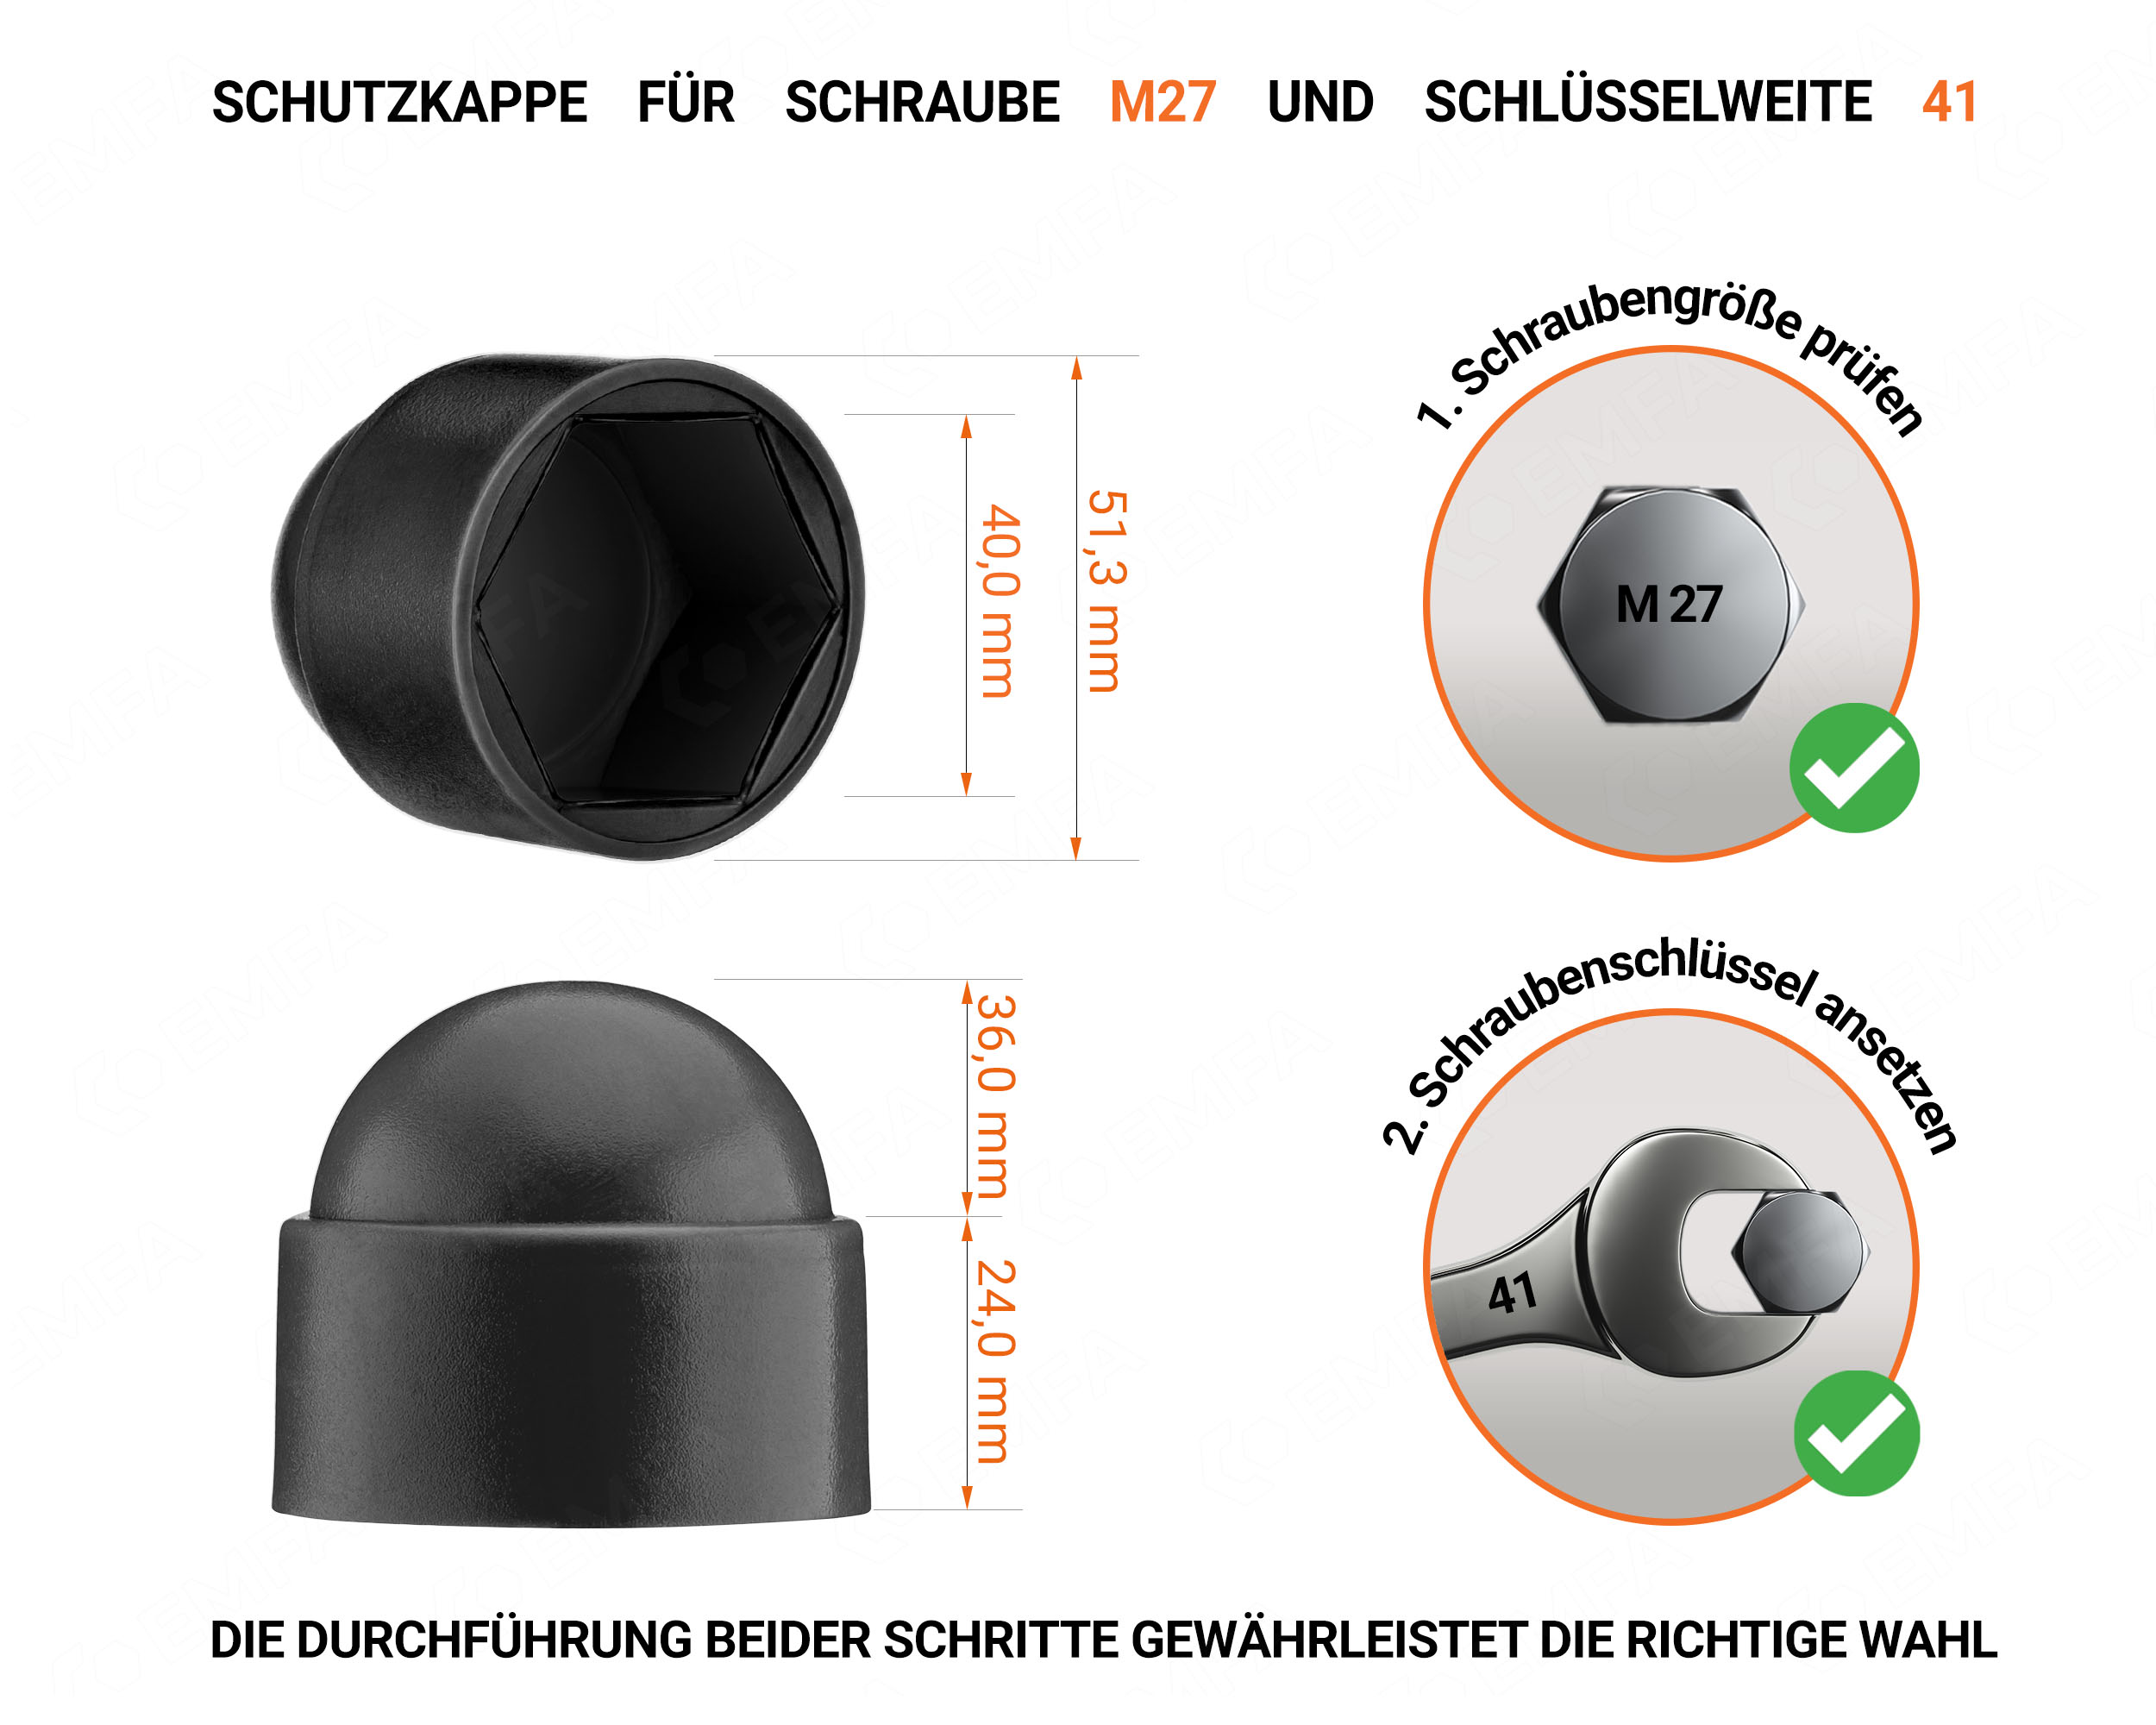 Schwarze Schutzkappen für Schrauben M27 Schlüsselweite 41 mit technischen Abmessungen und Anleitung für korrekte Messung